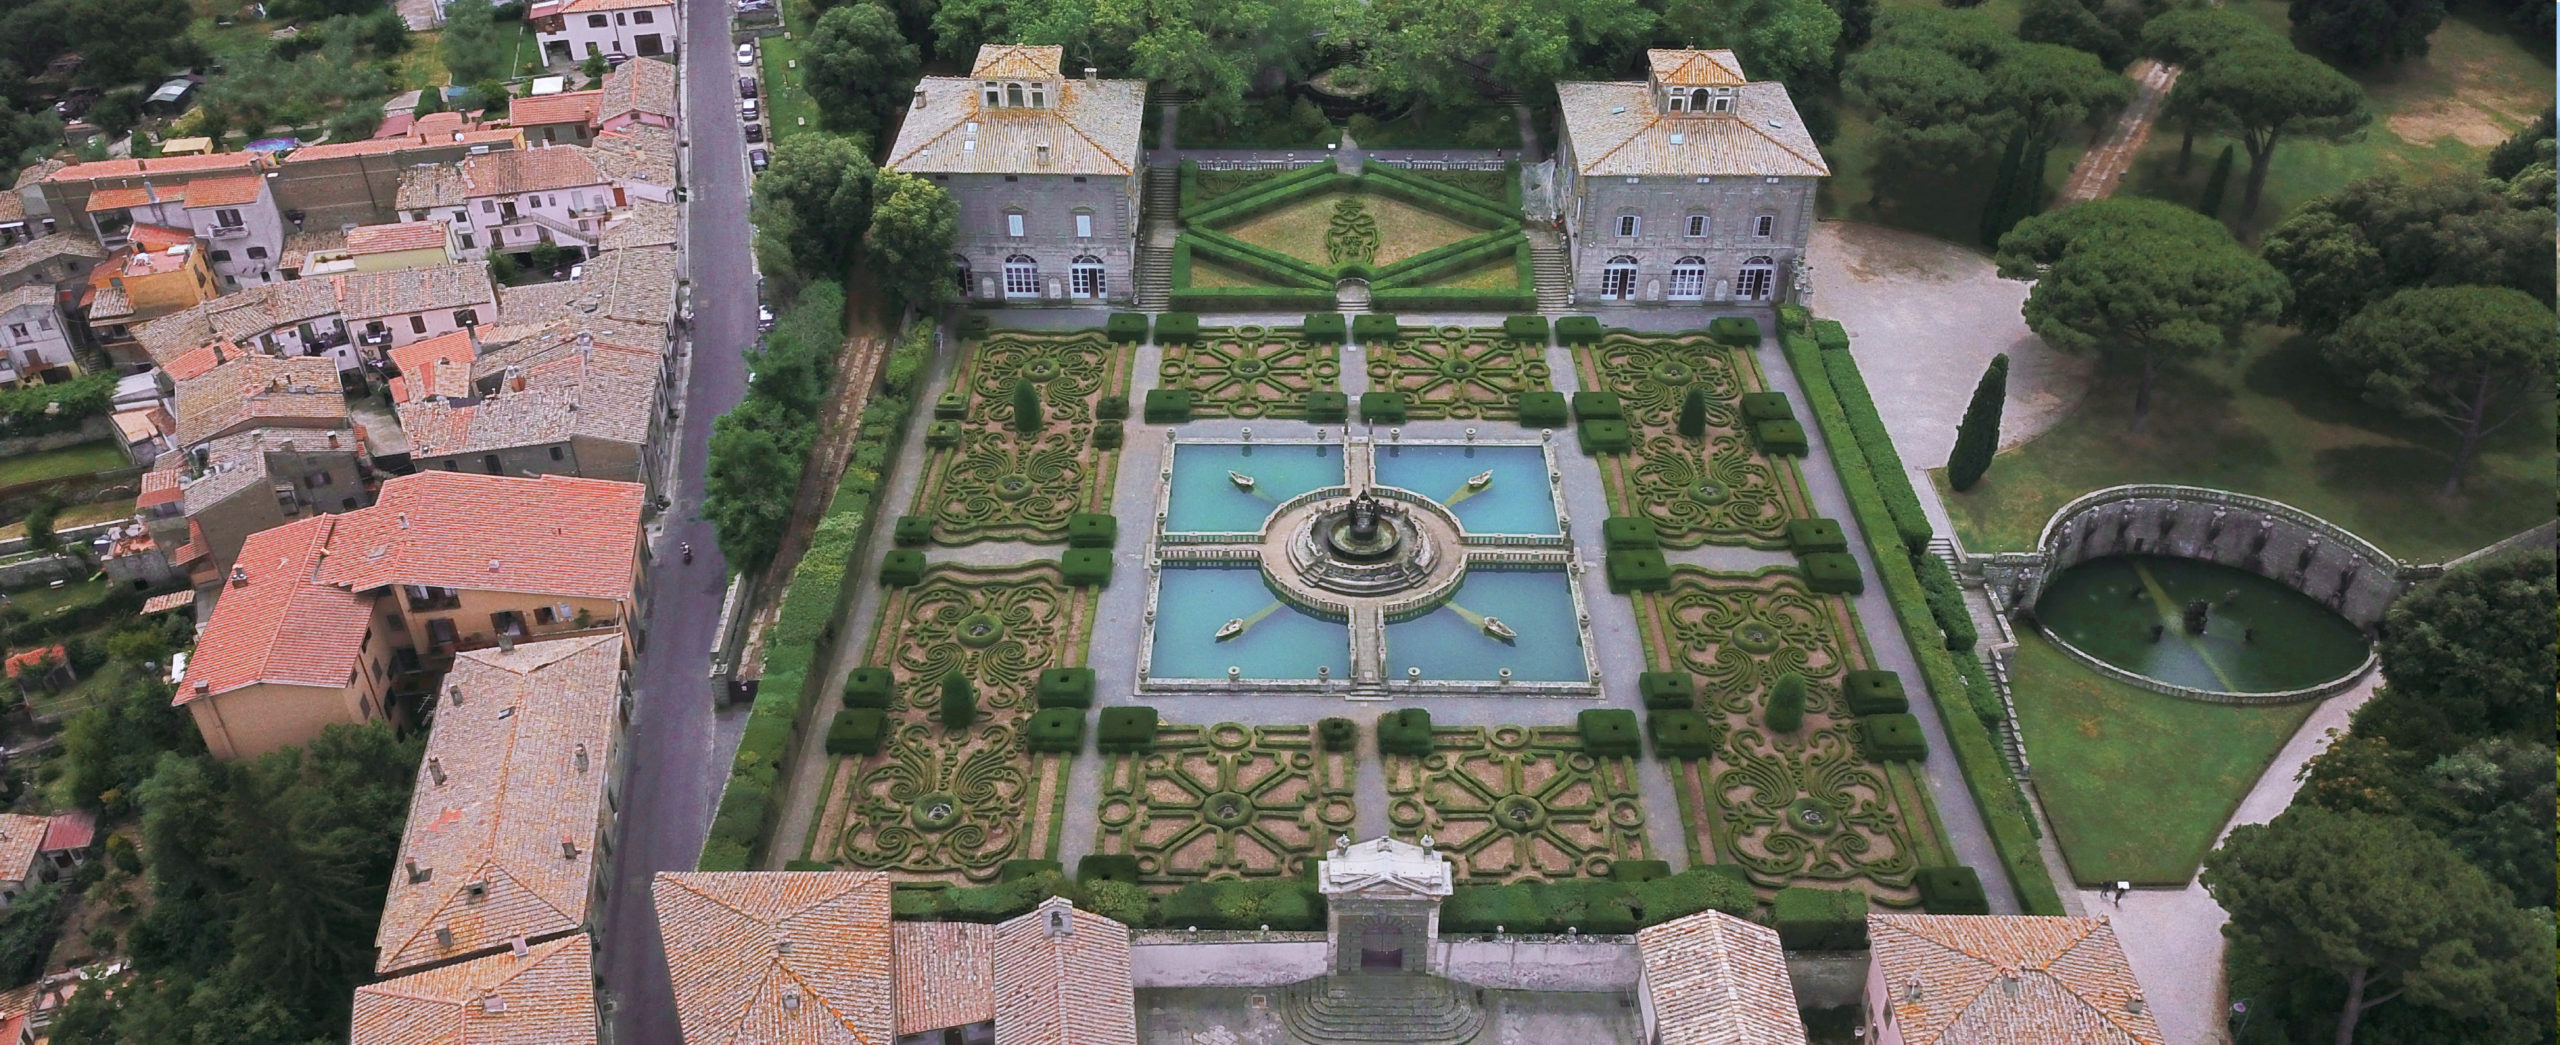 Villa Lante - VT - Il giardino quadrato e le palazzine gemelle